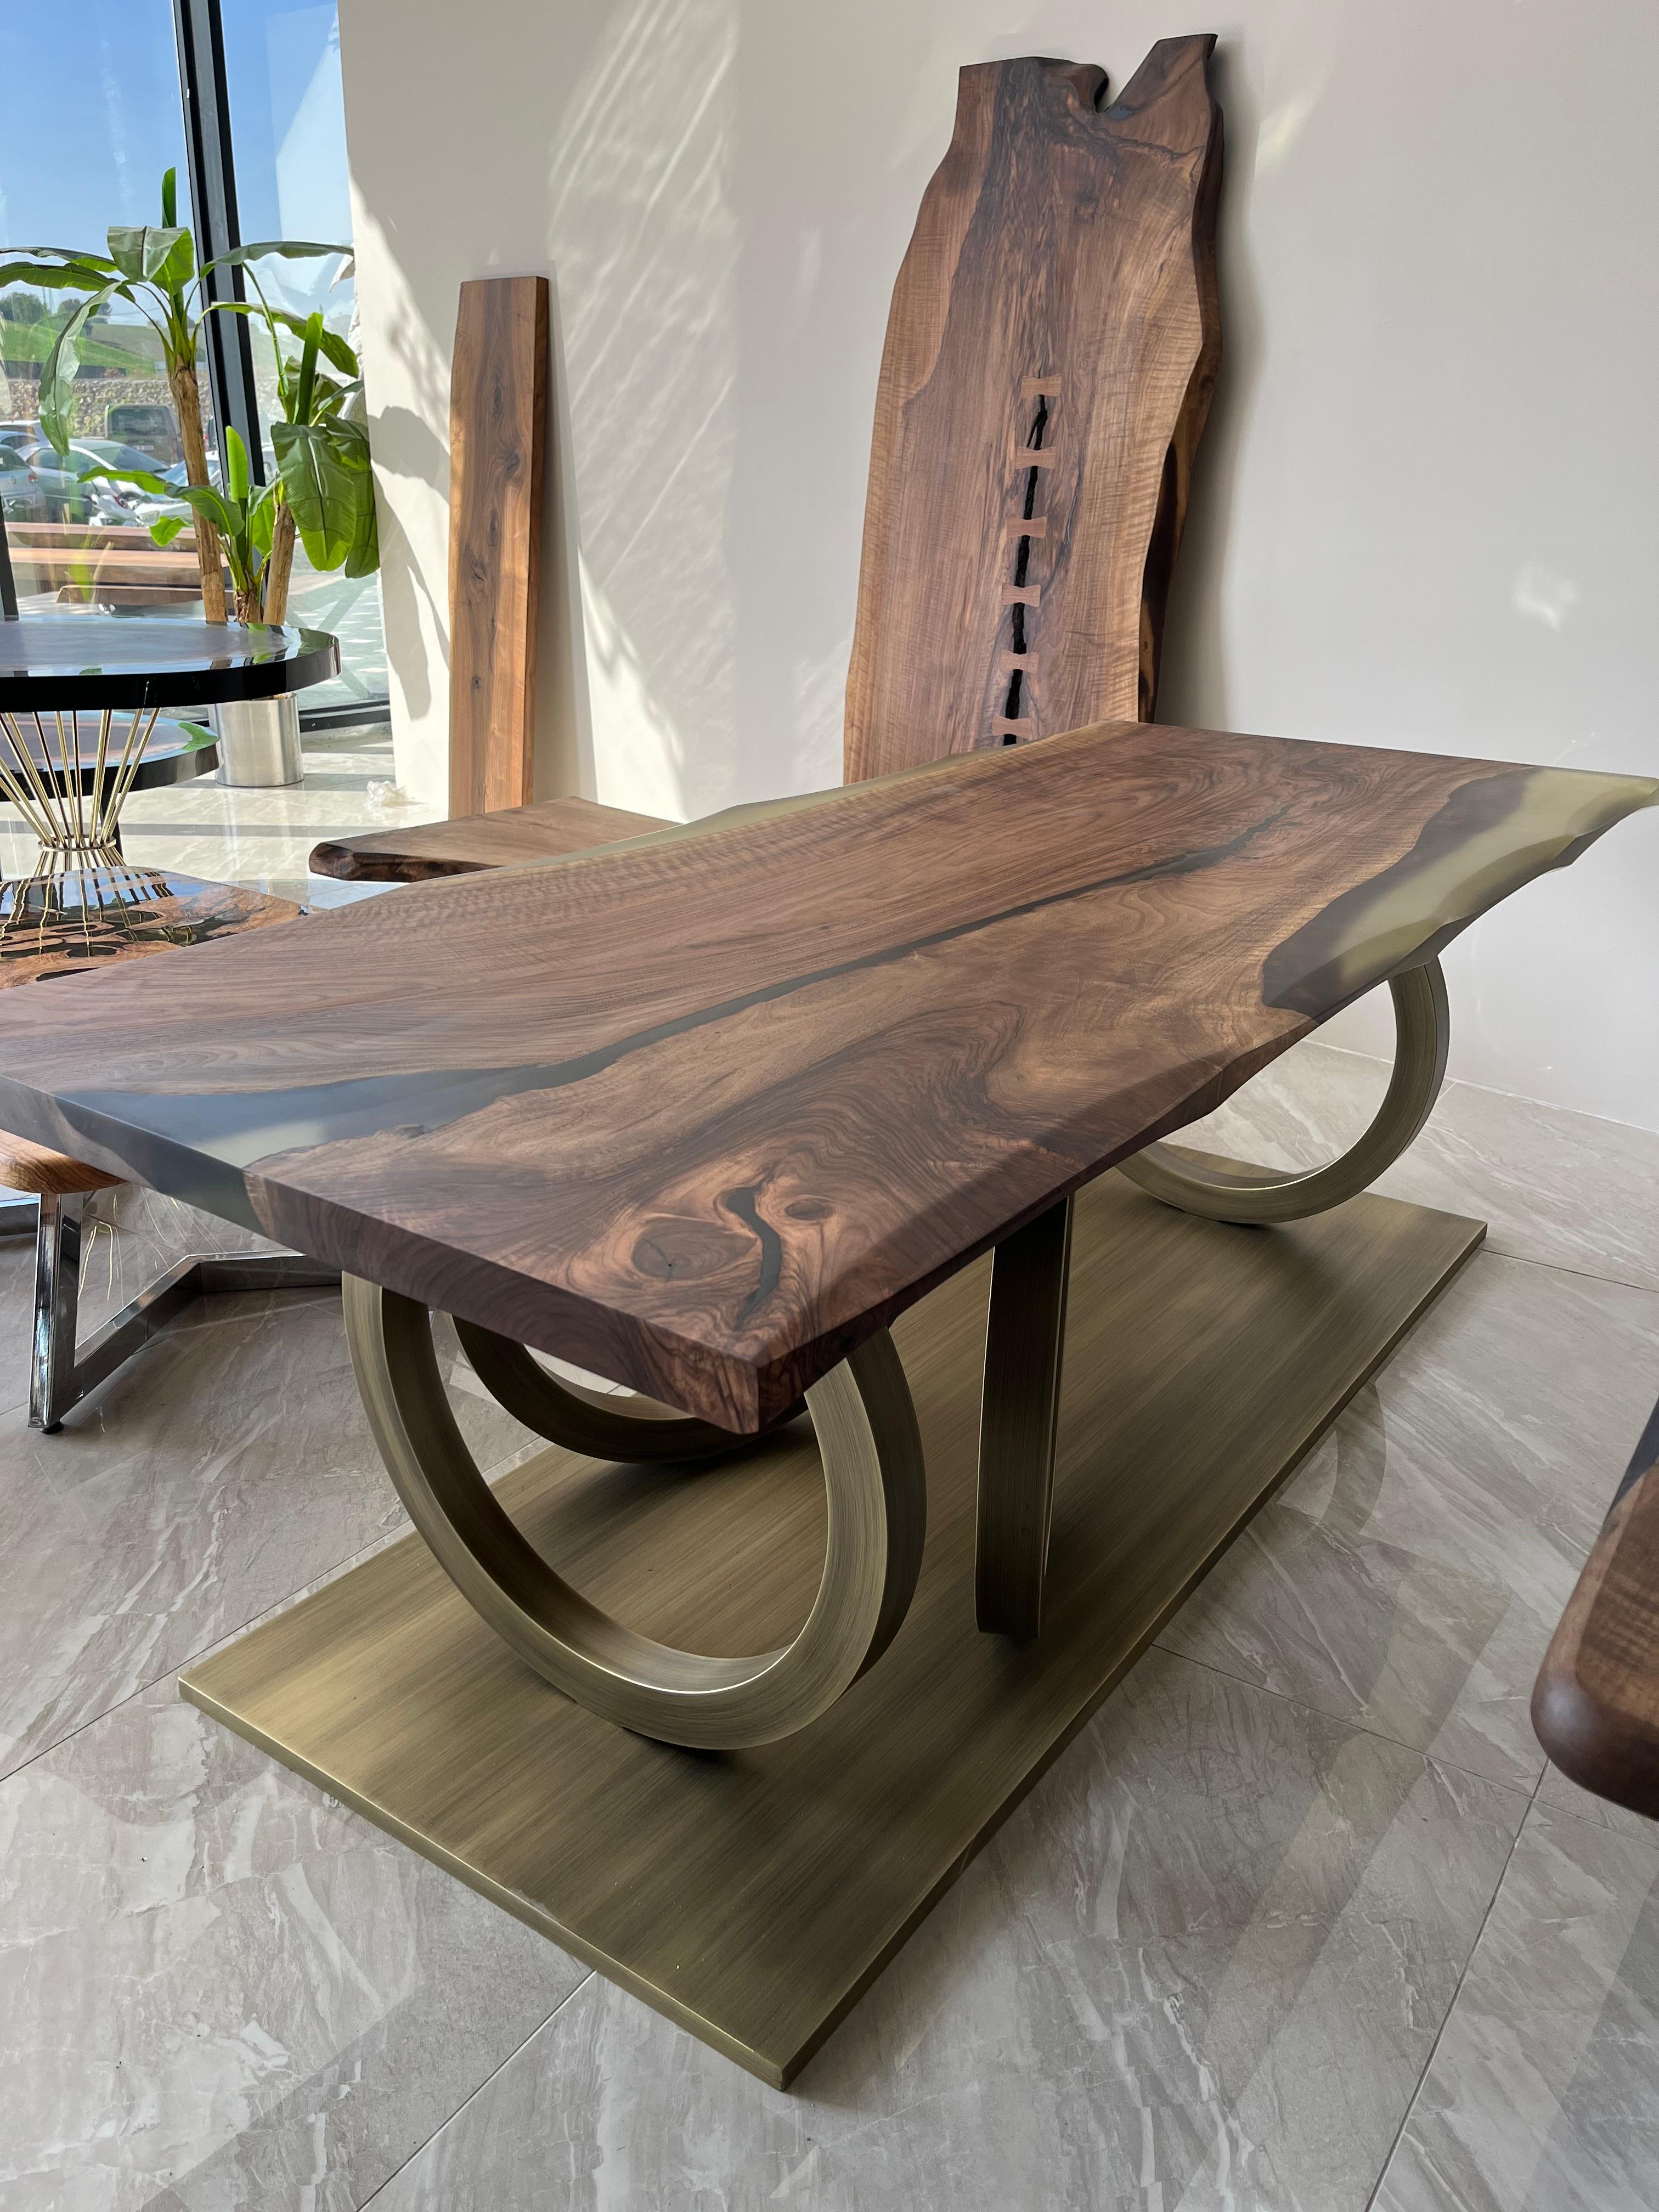 Table monobloc en résine époxy noyer

Cette table est fabriquée en bois de noyer et en époxy vert. 

Des tailles, des couleurs et des finitions personnalisées sont disponibles !